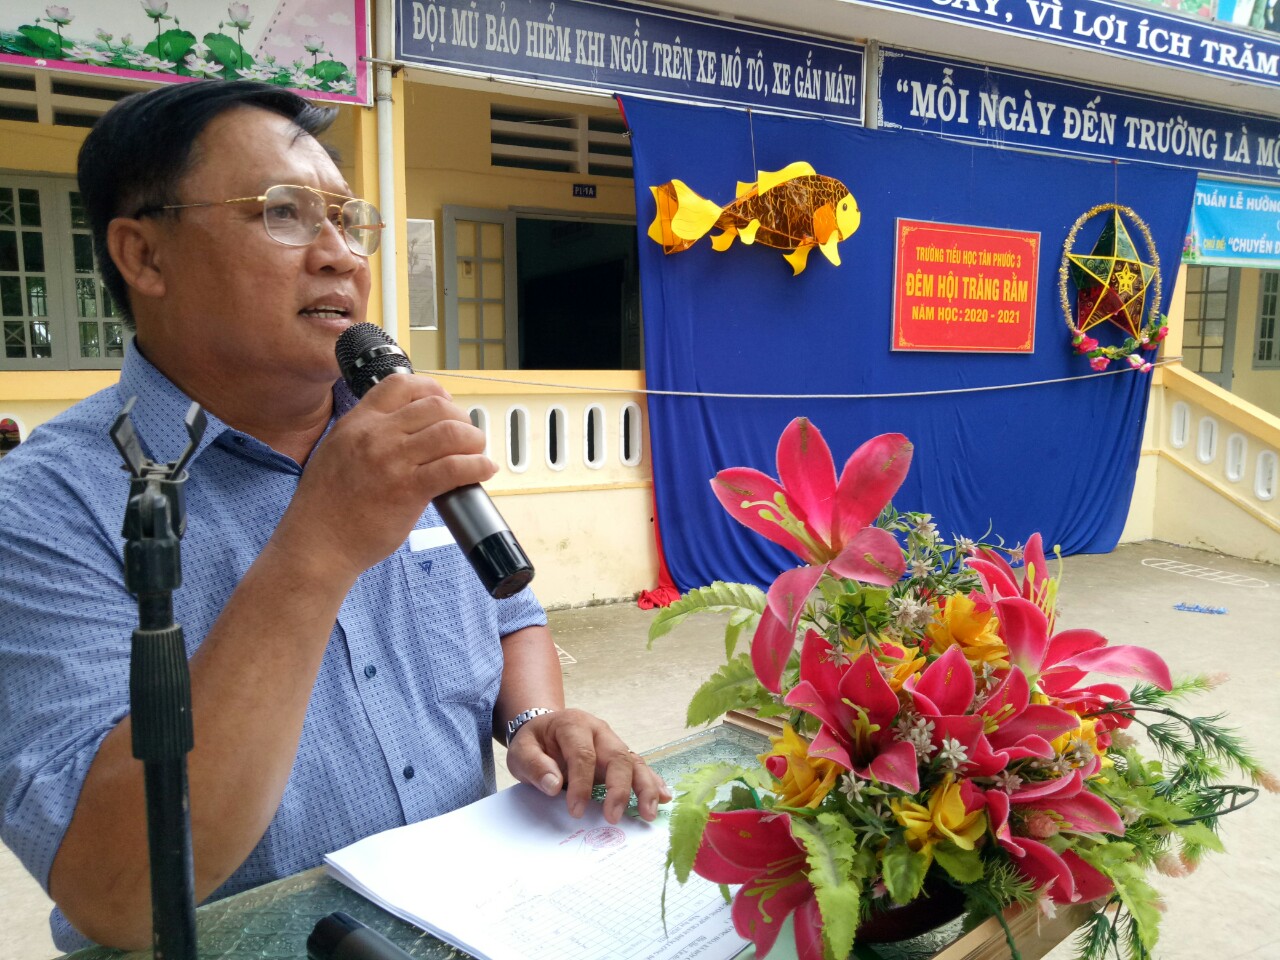 Thầy Phạm Văn Tráng hướng dẫn các em tham gia trò chơi trả lời câu hỏi nhanh trong buổi tổ chức